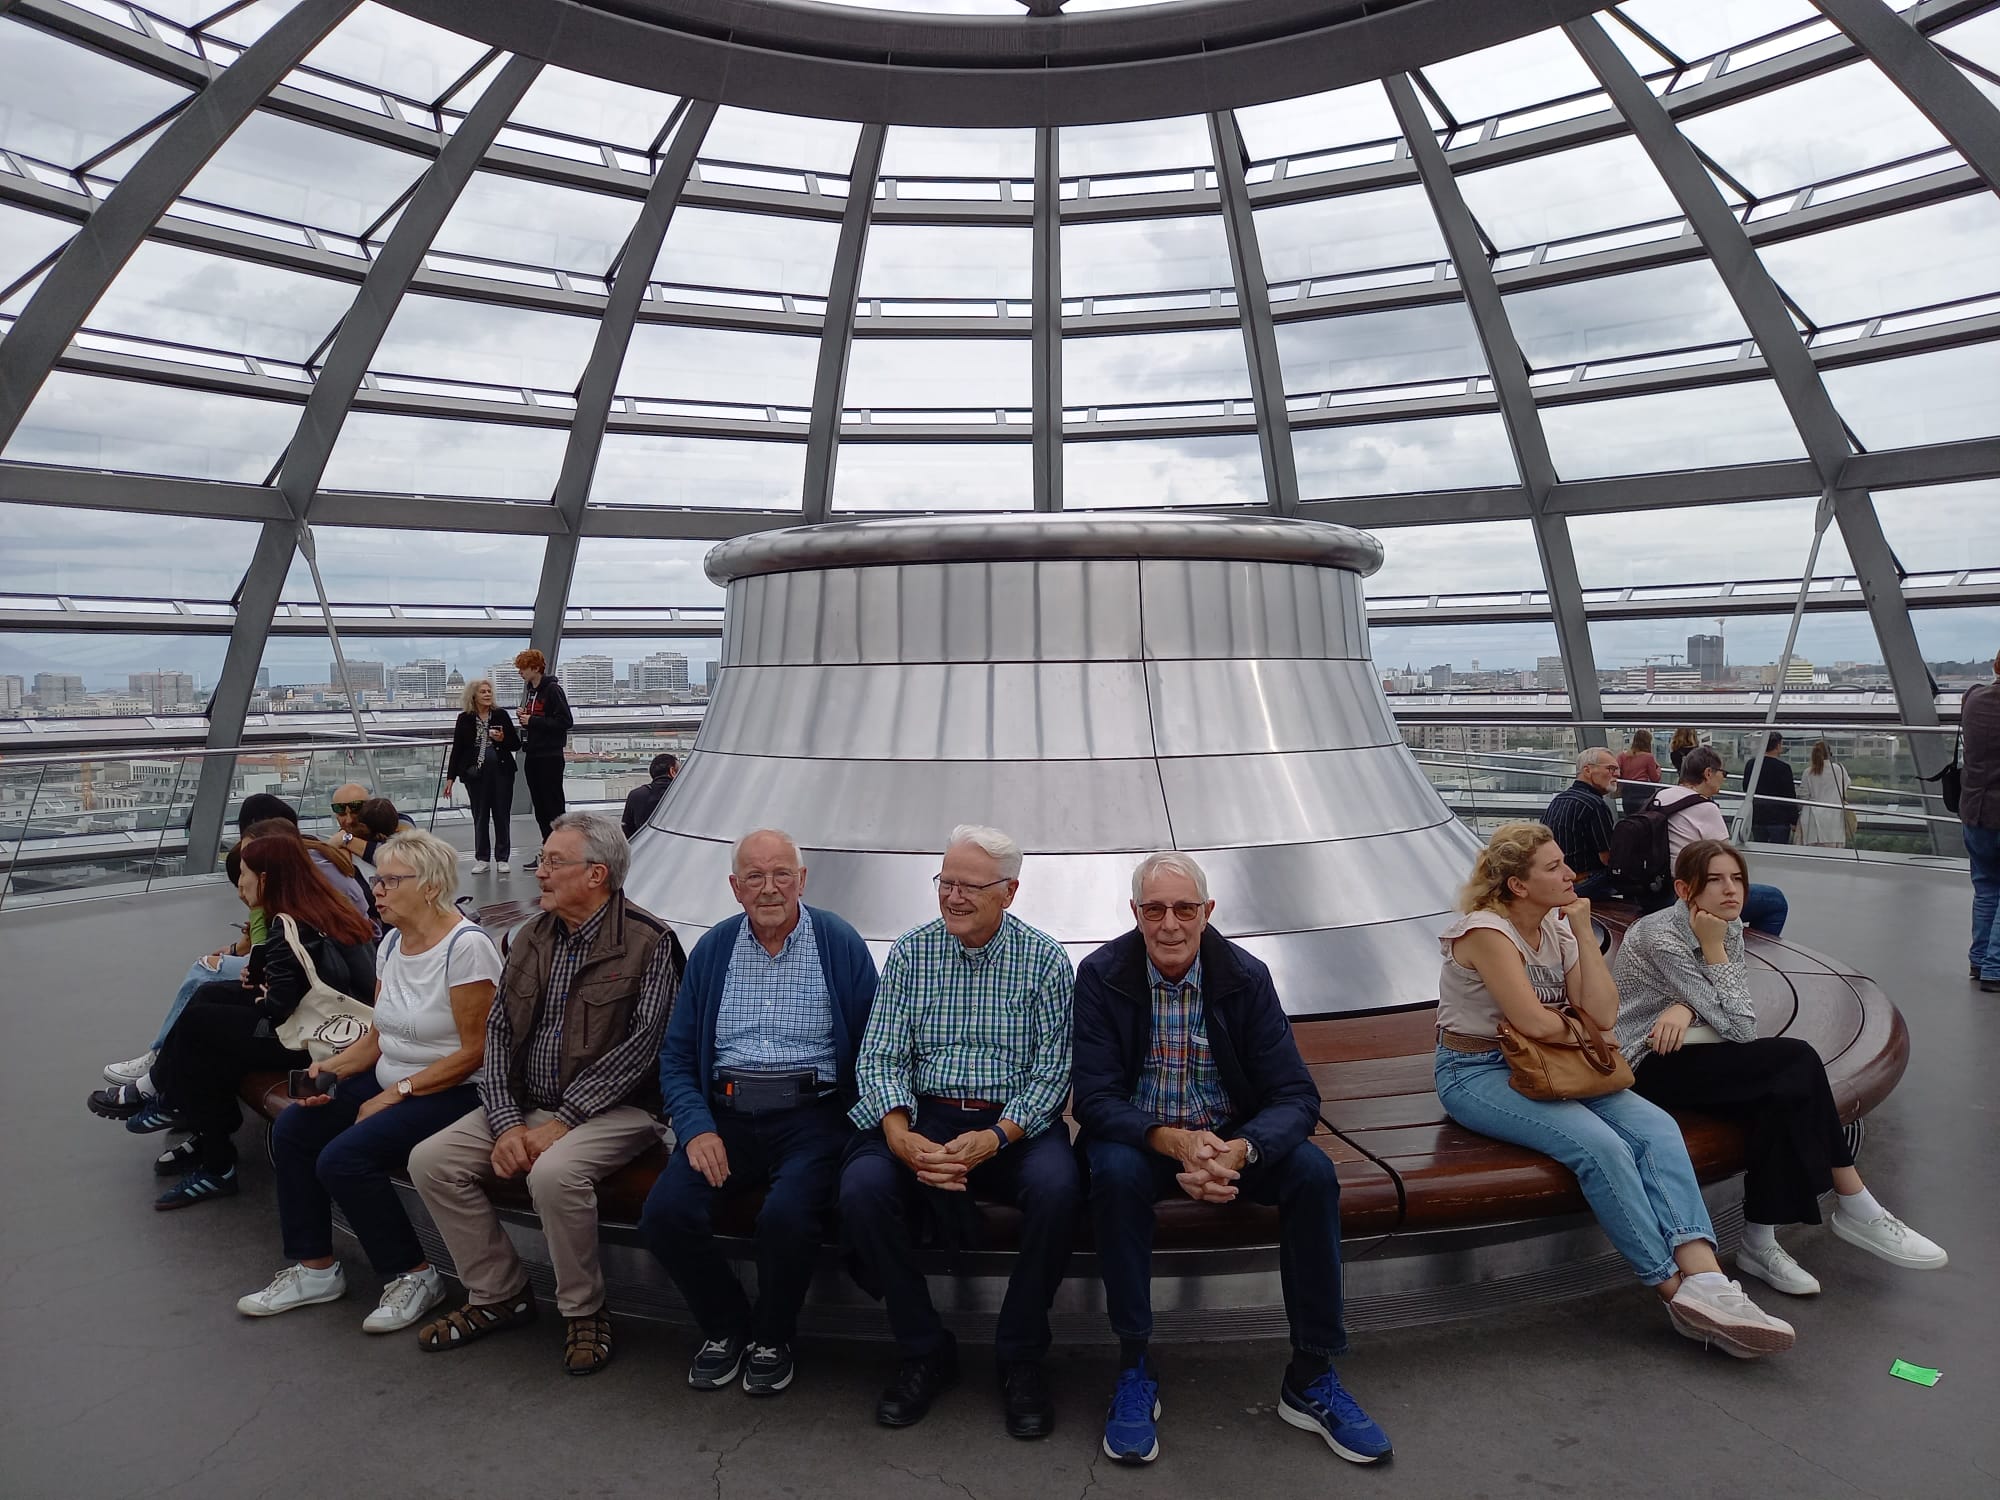 In der Reichstagskuppel